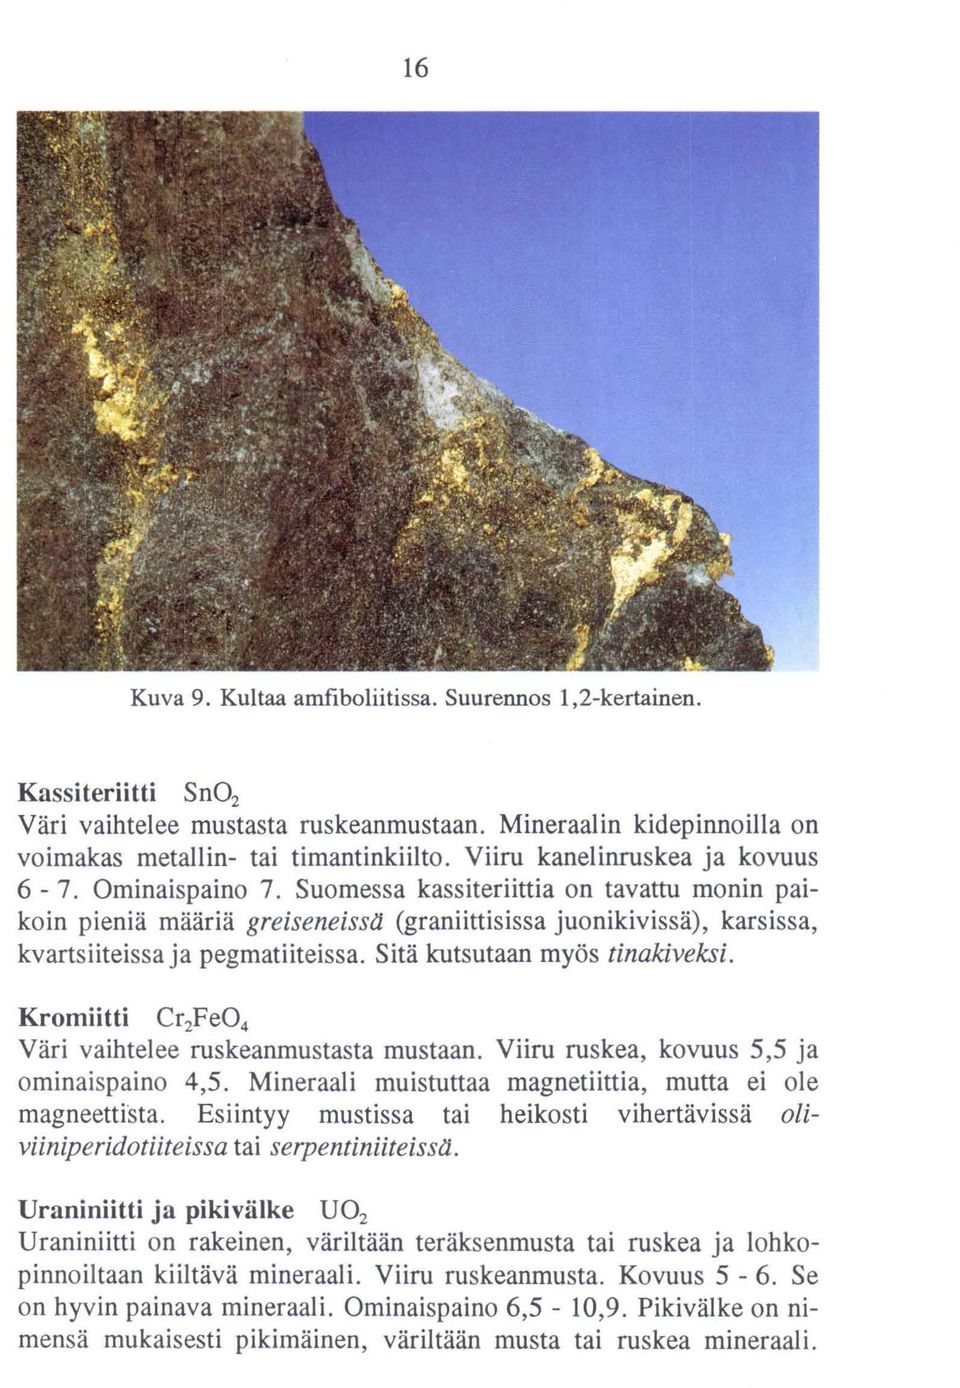 Suomessa kassiteriittia on tavattu monin paikoin pieniä määriä greiseneisstt (graniittisissa juonikivissä), karsissa, kvartsiiteissa ja pegmatiiteissa. Sitä kutsutaan myös tinakiveksi.